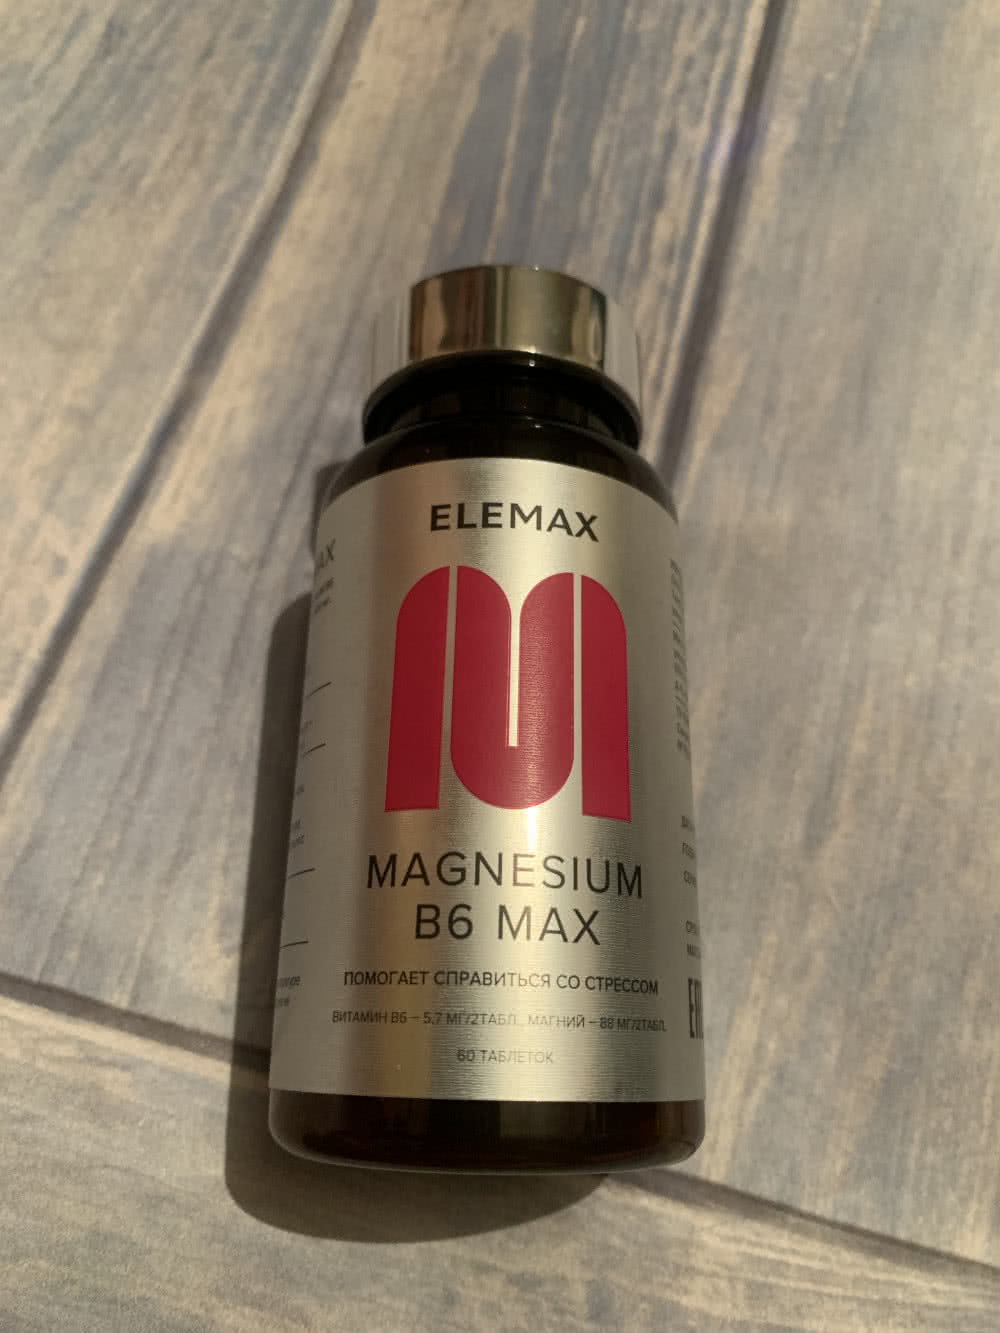 Elemax, Magnesium B6 Max, 60шт